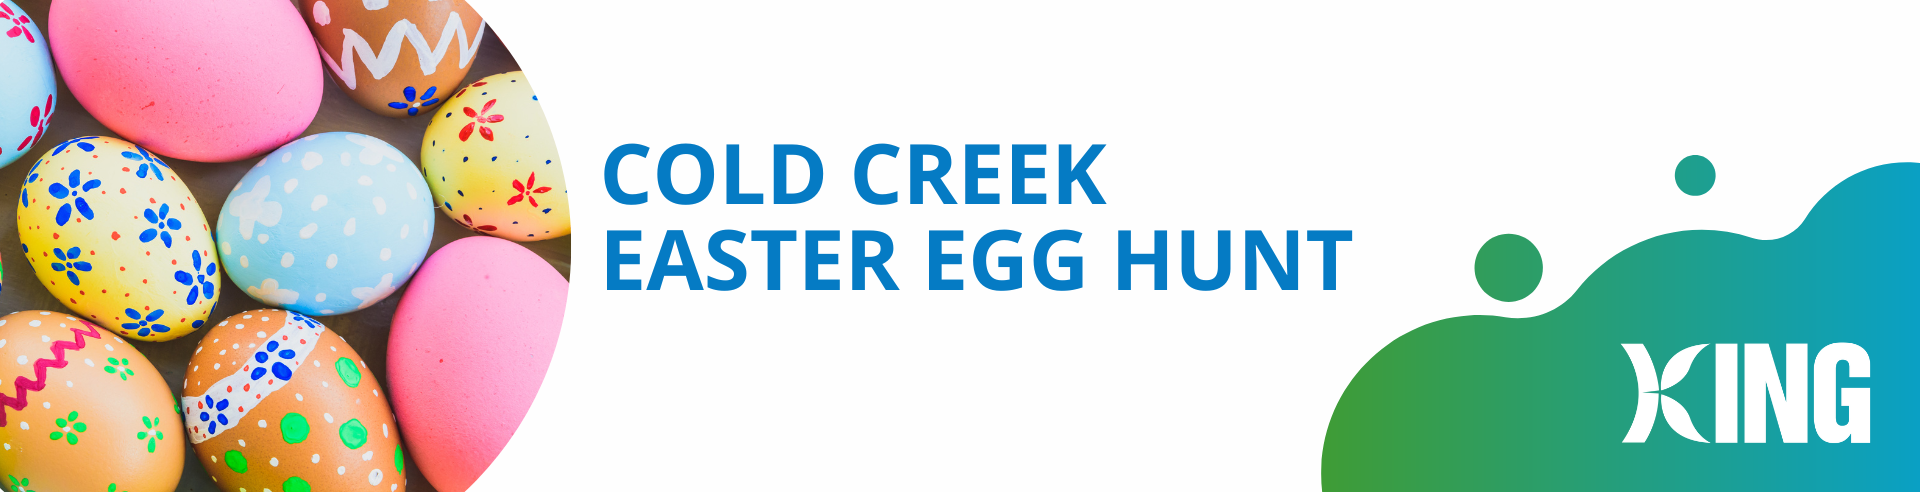 Cold Creek Easter Egg Hunt